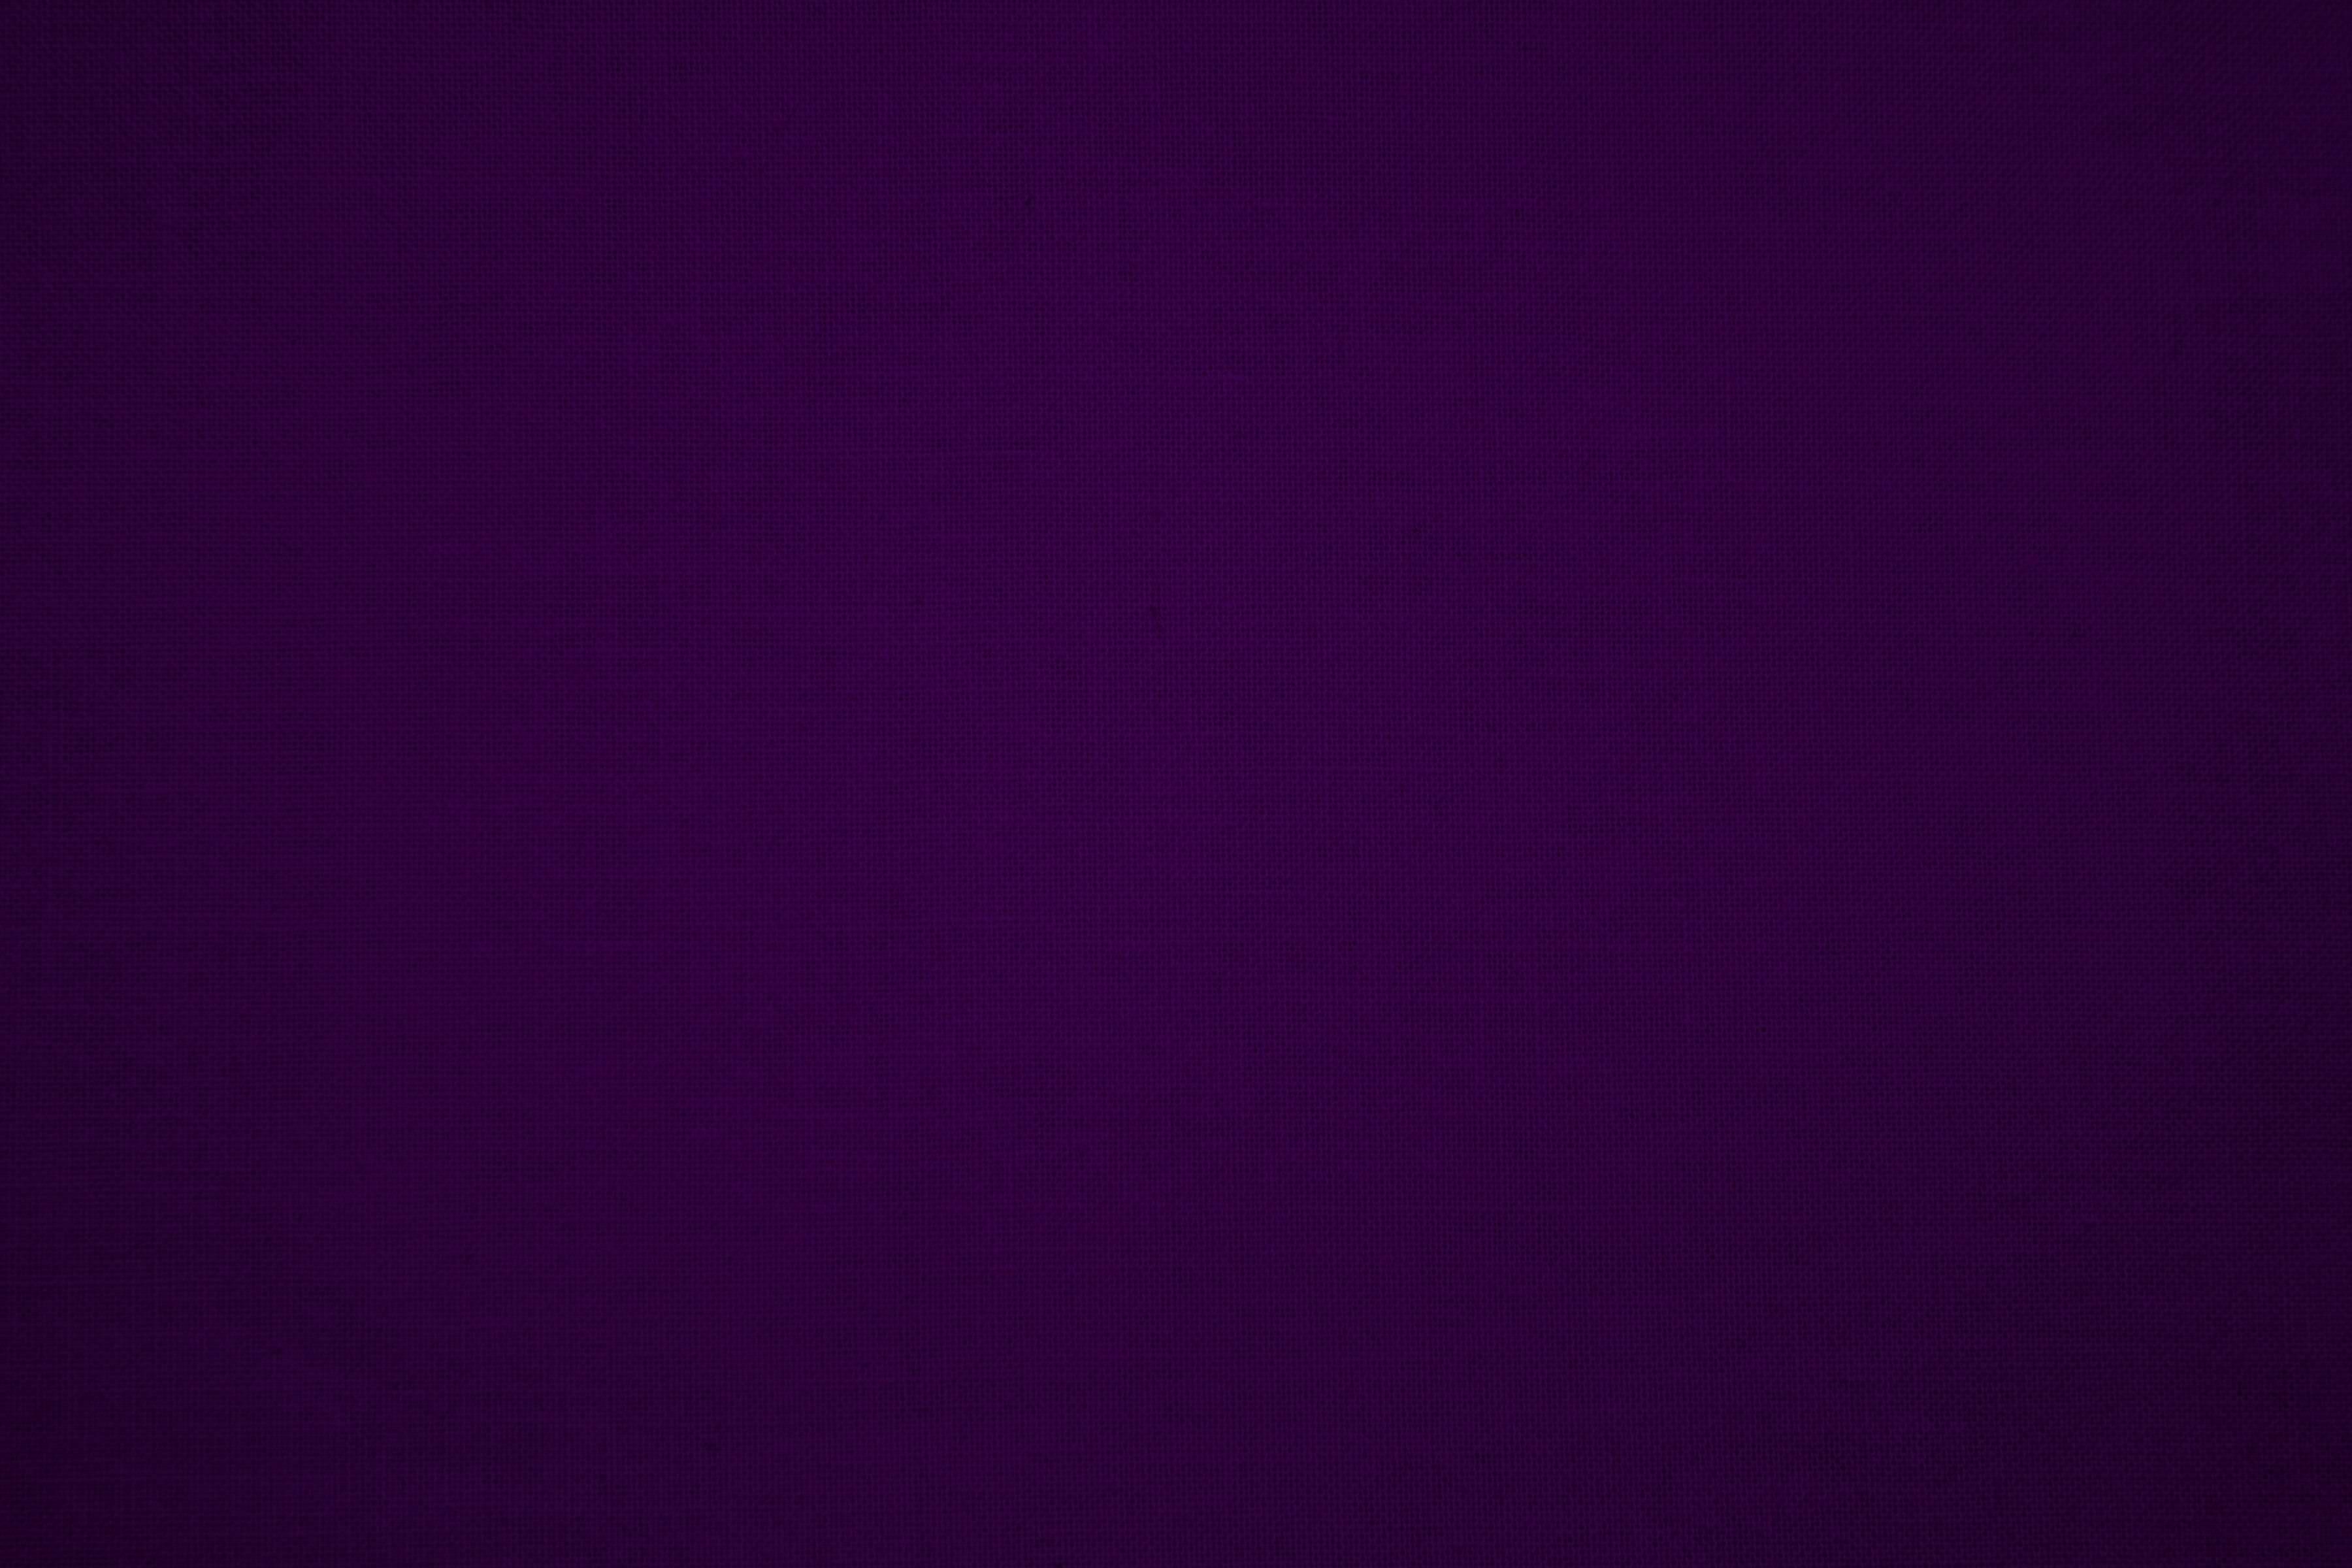 Plain Dark Purple Background